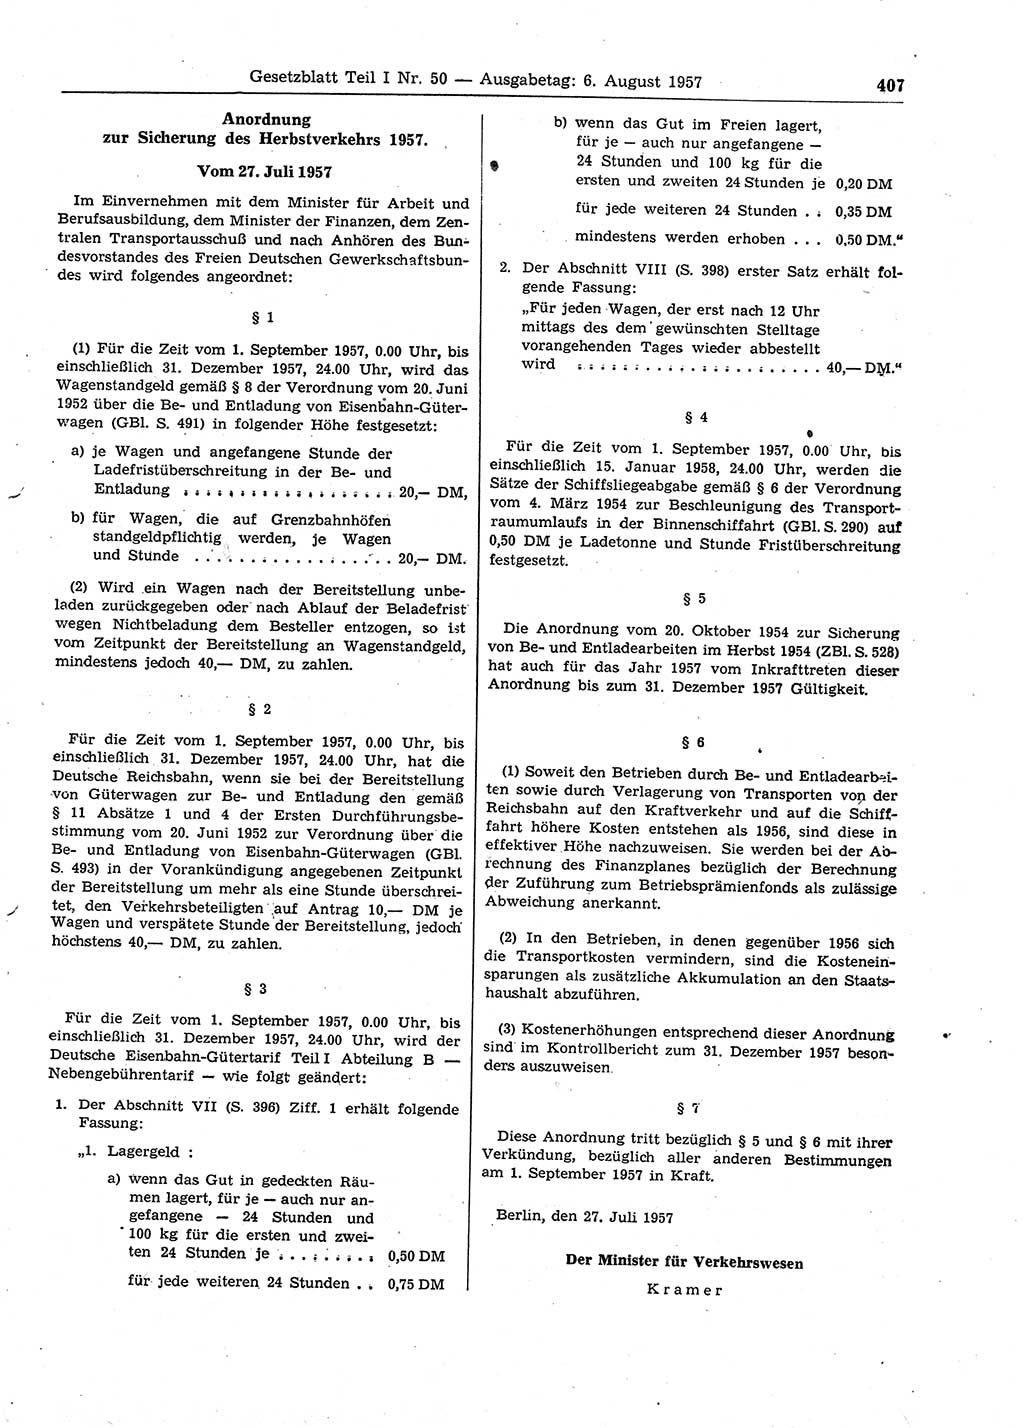 Gesetzblatt (GBl.) der Deutschen Demokratischen Republik (DDR) Teil Ⅰ 1957, Seite 407 (GBl. DDR Ⅰ 1957, S. 407)